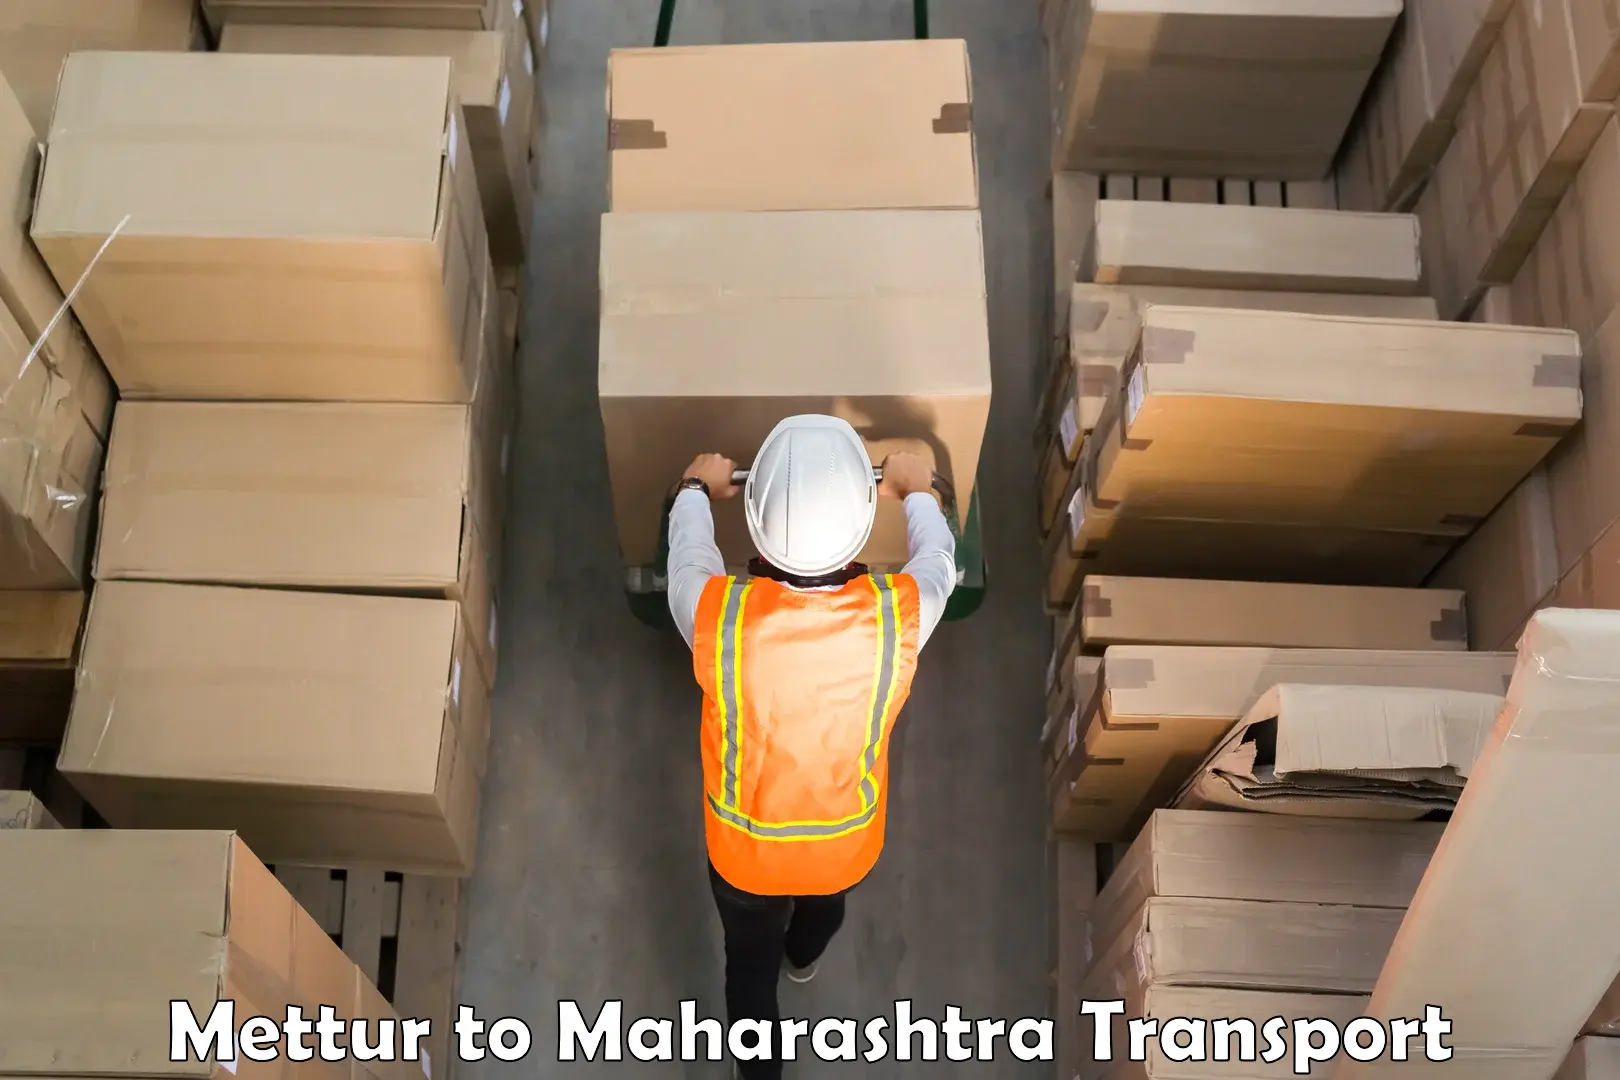 Bike shipping service Mettur to Maharashtra